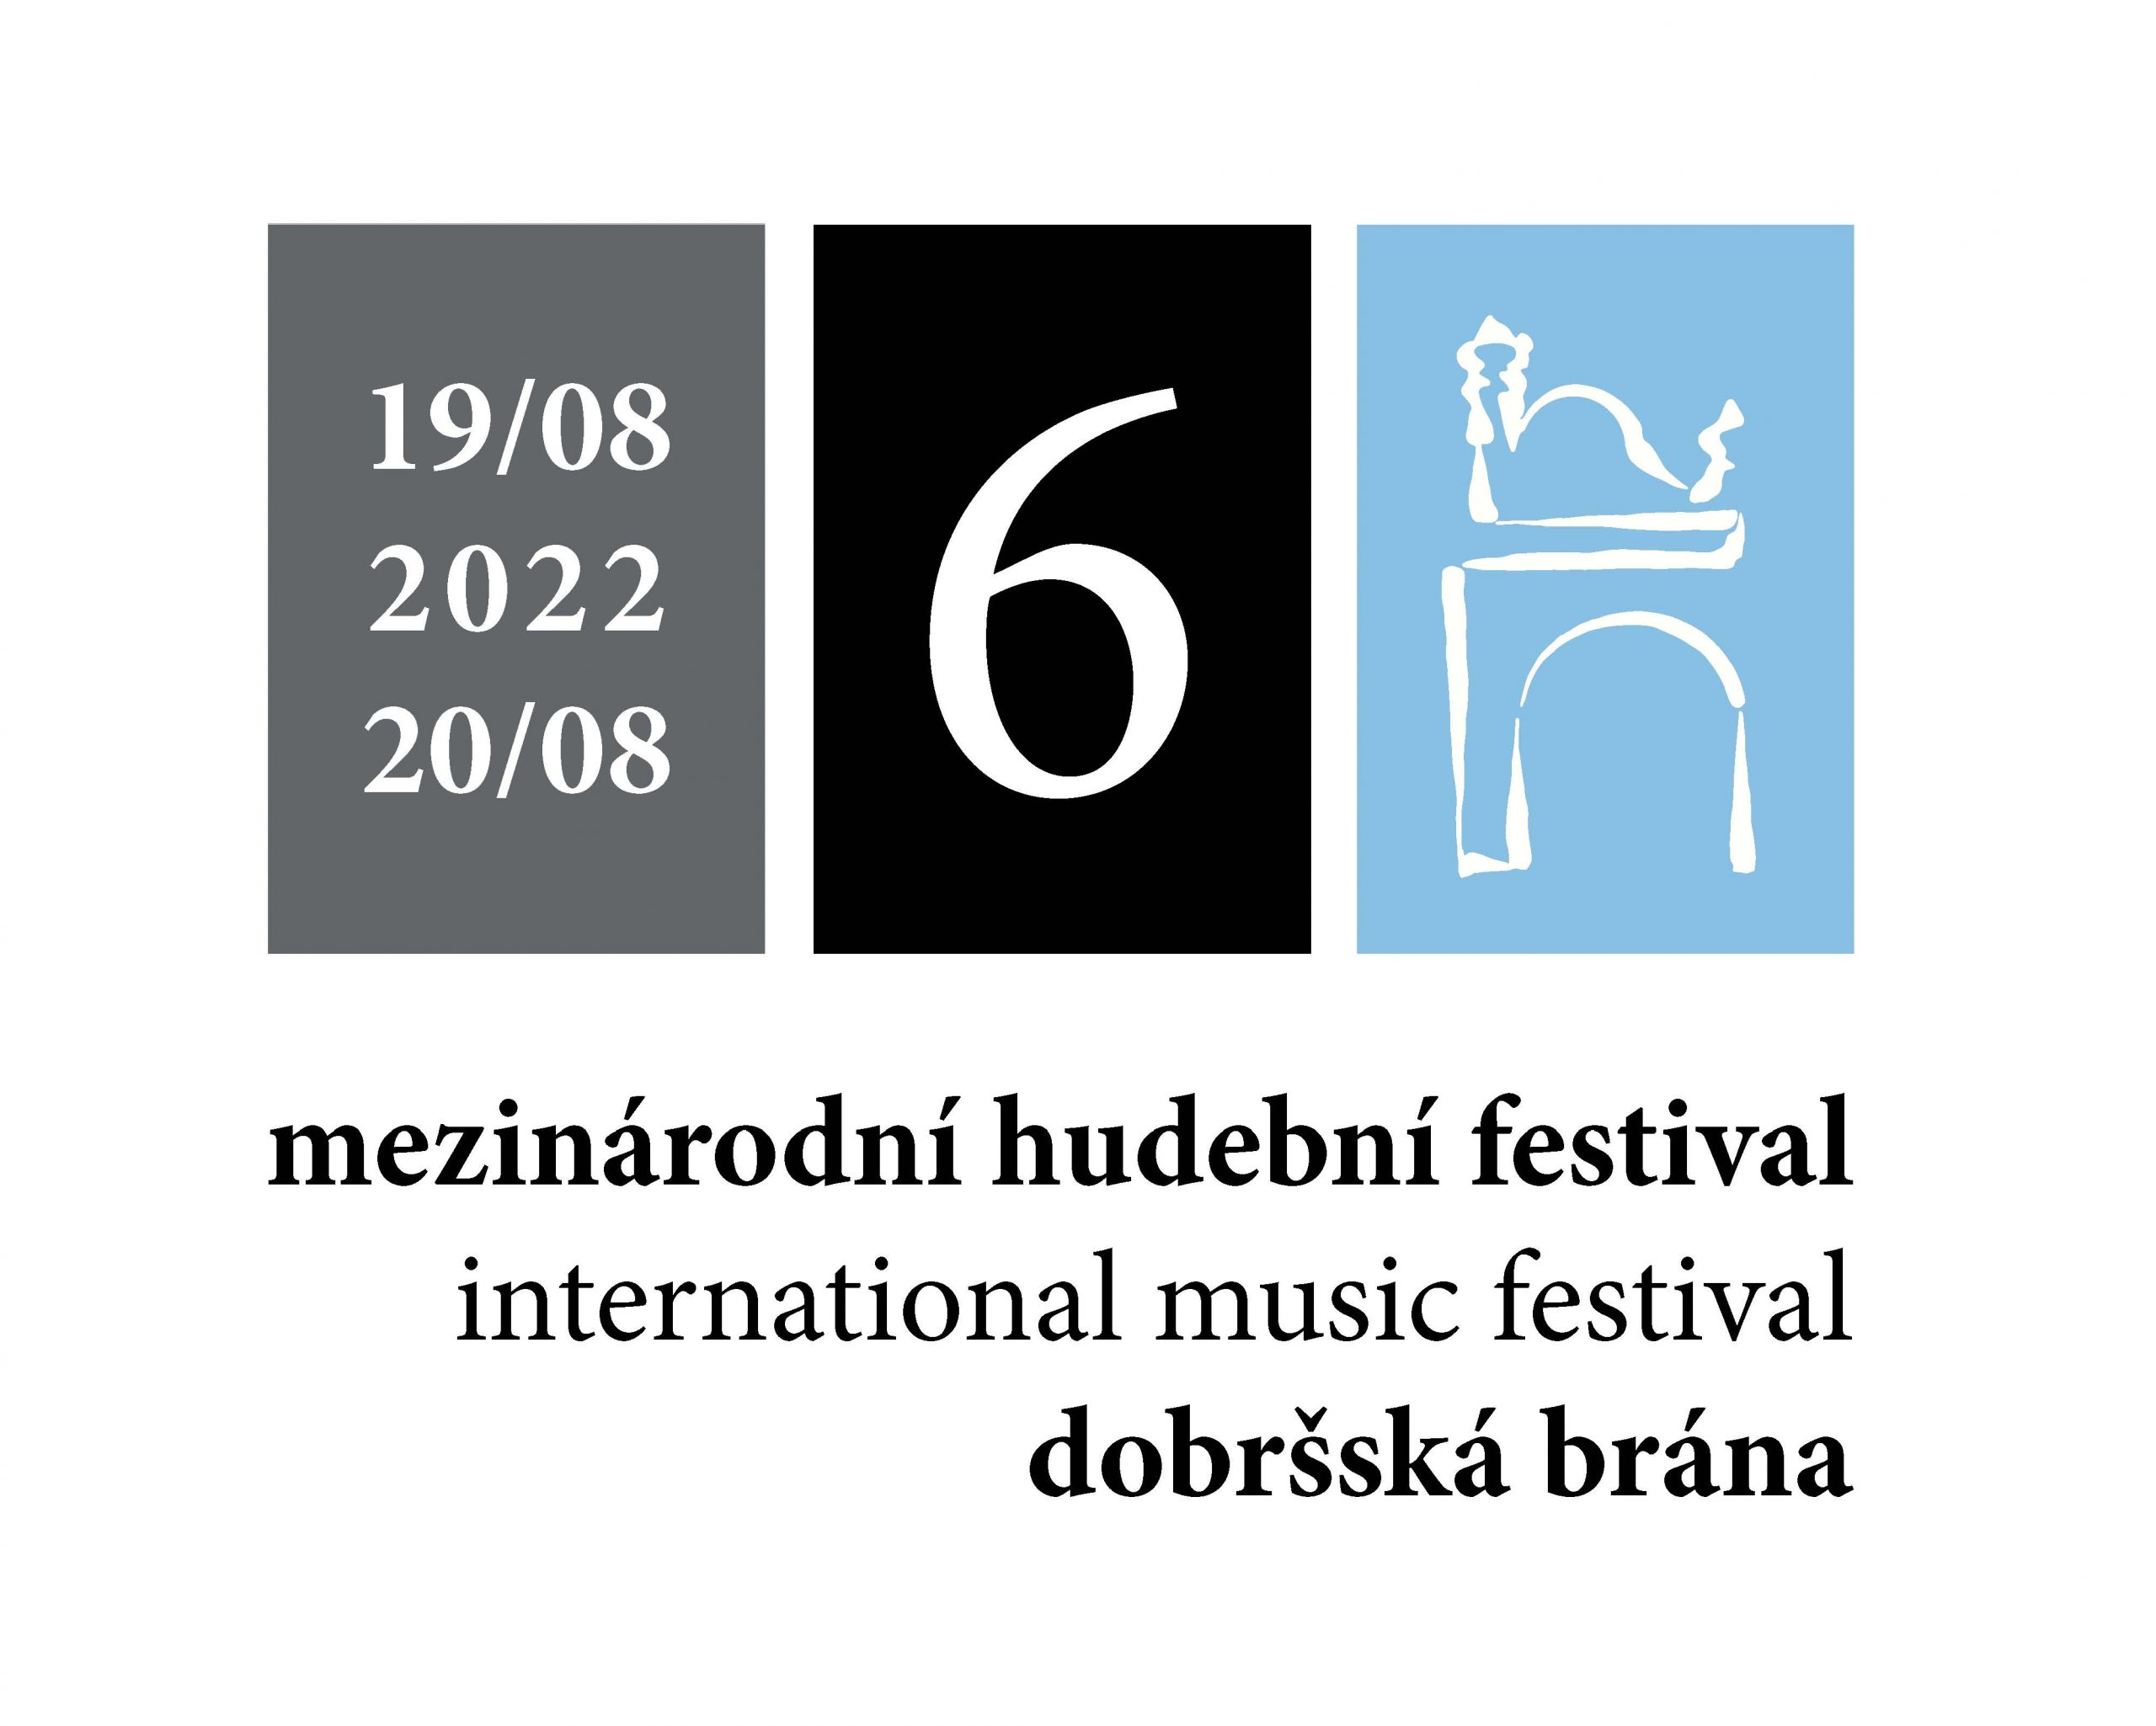 Festival Dobršská brána 2022